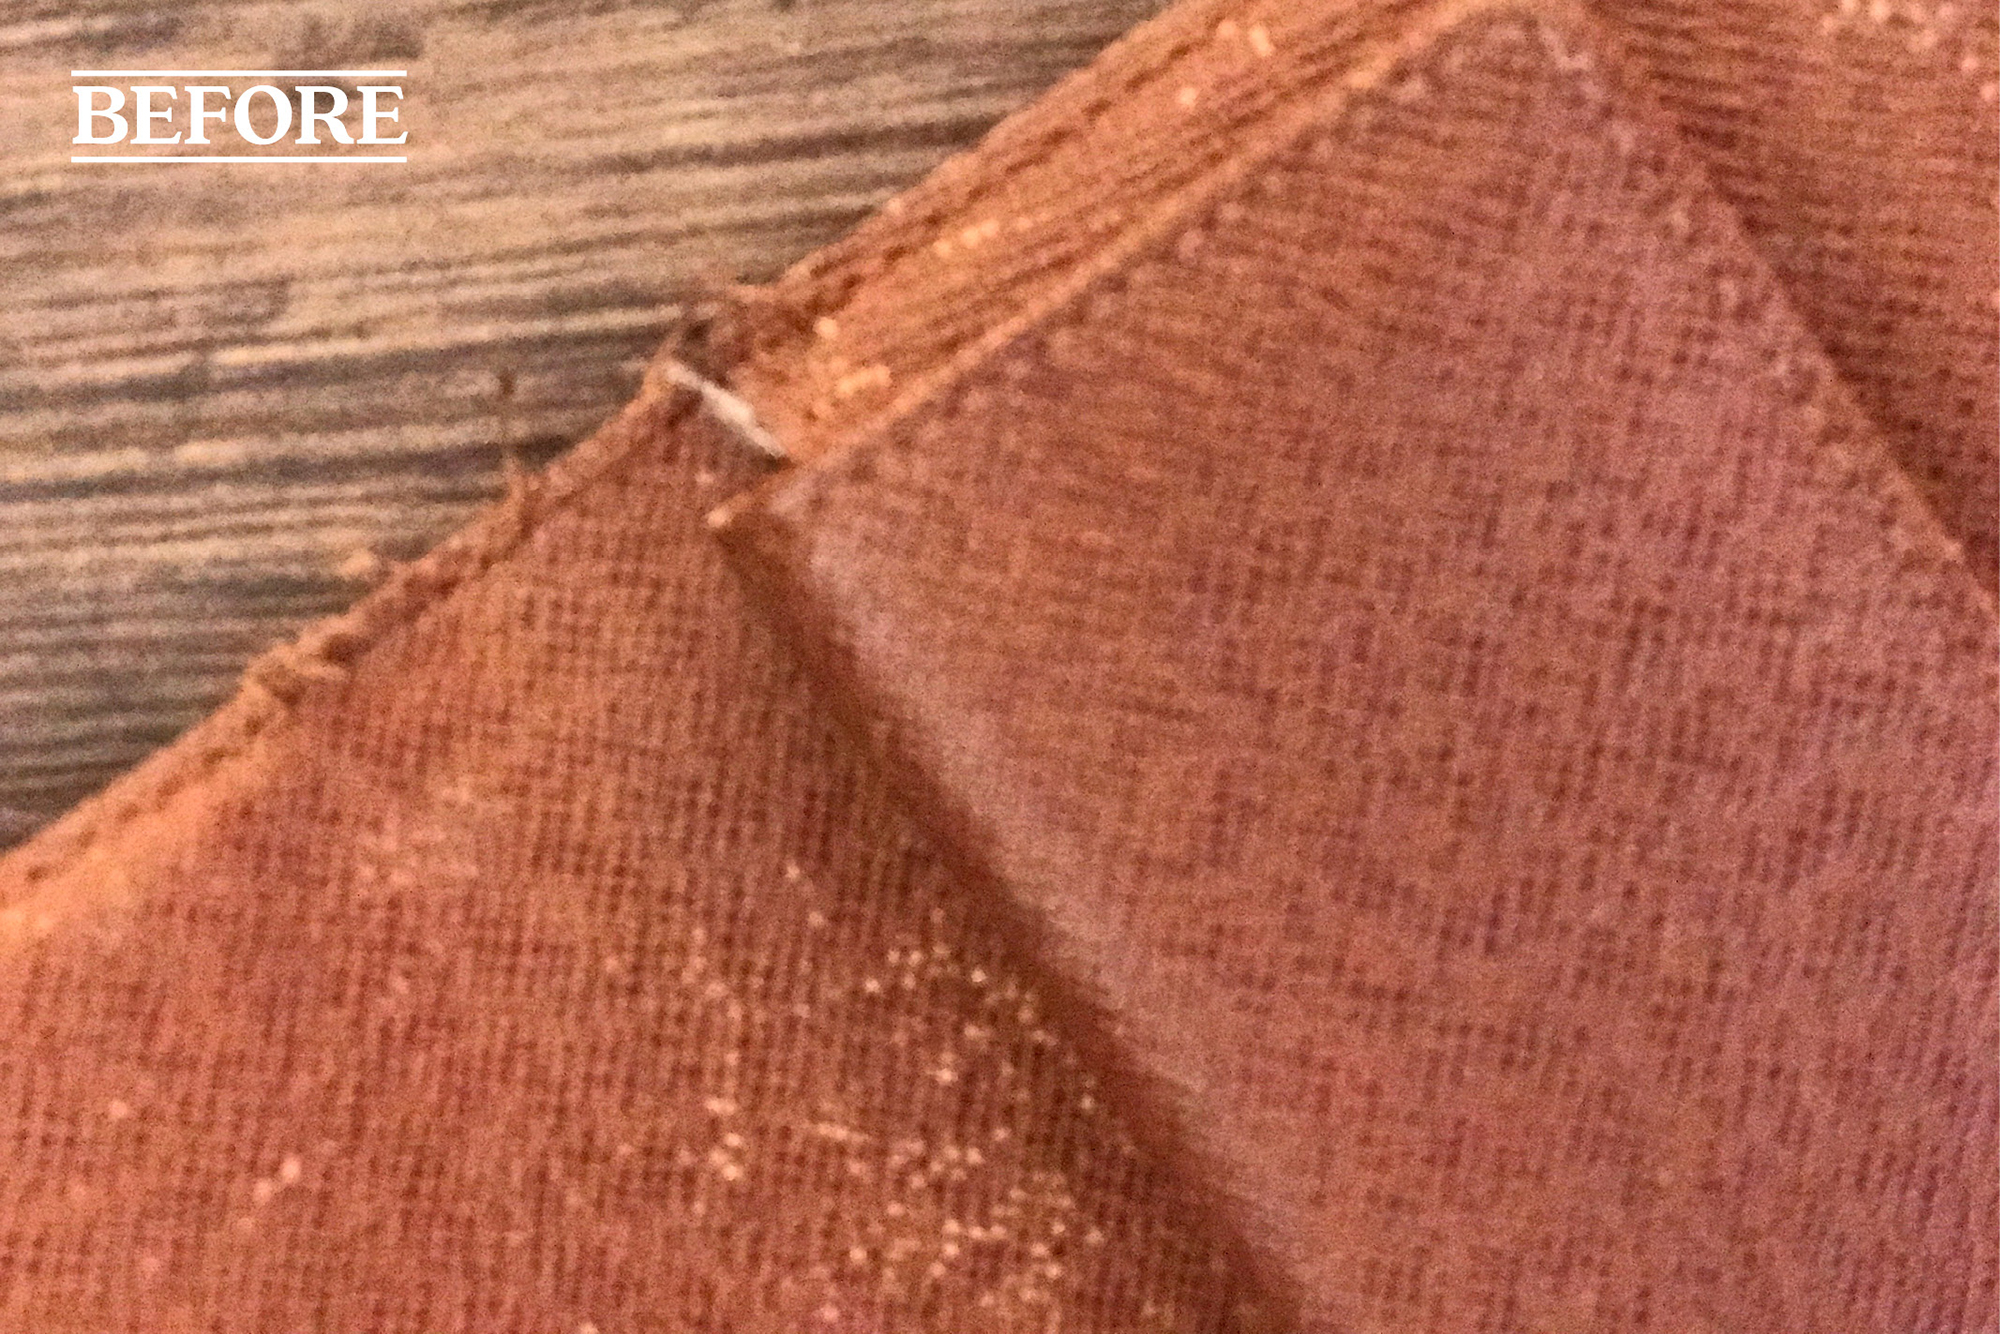 Louis-Vuitton-purse-repair